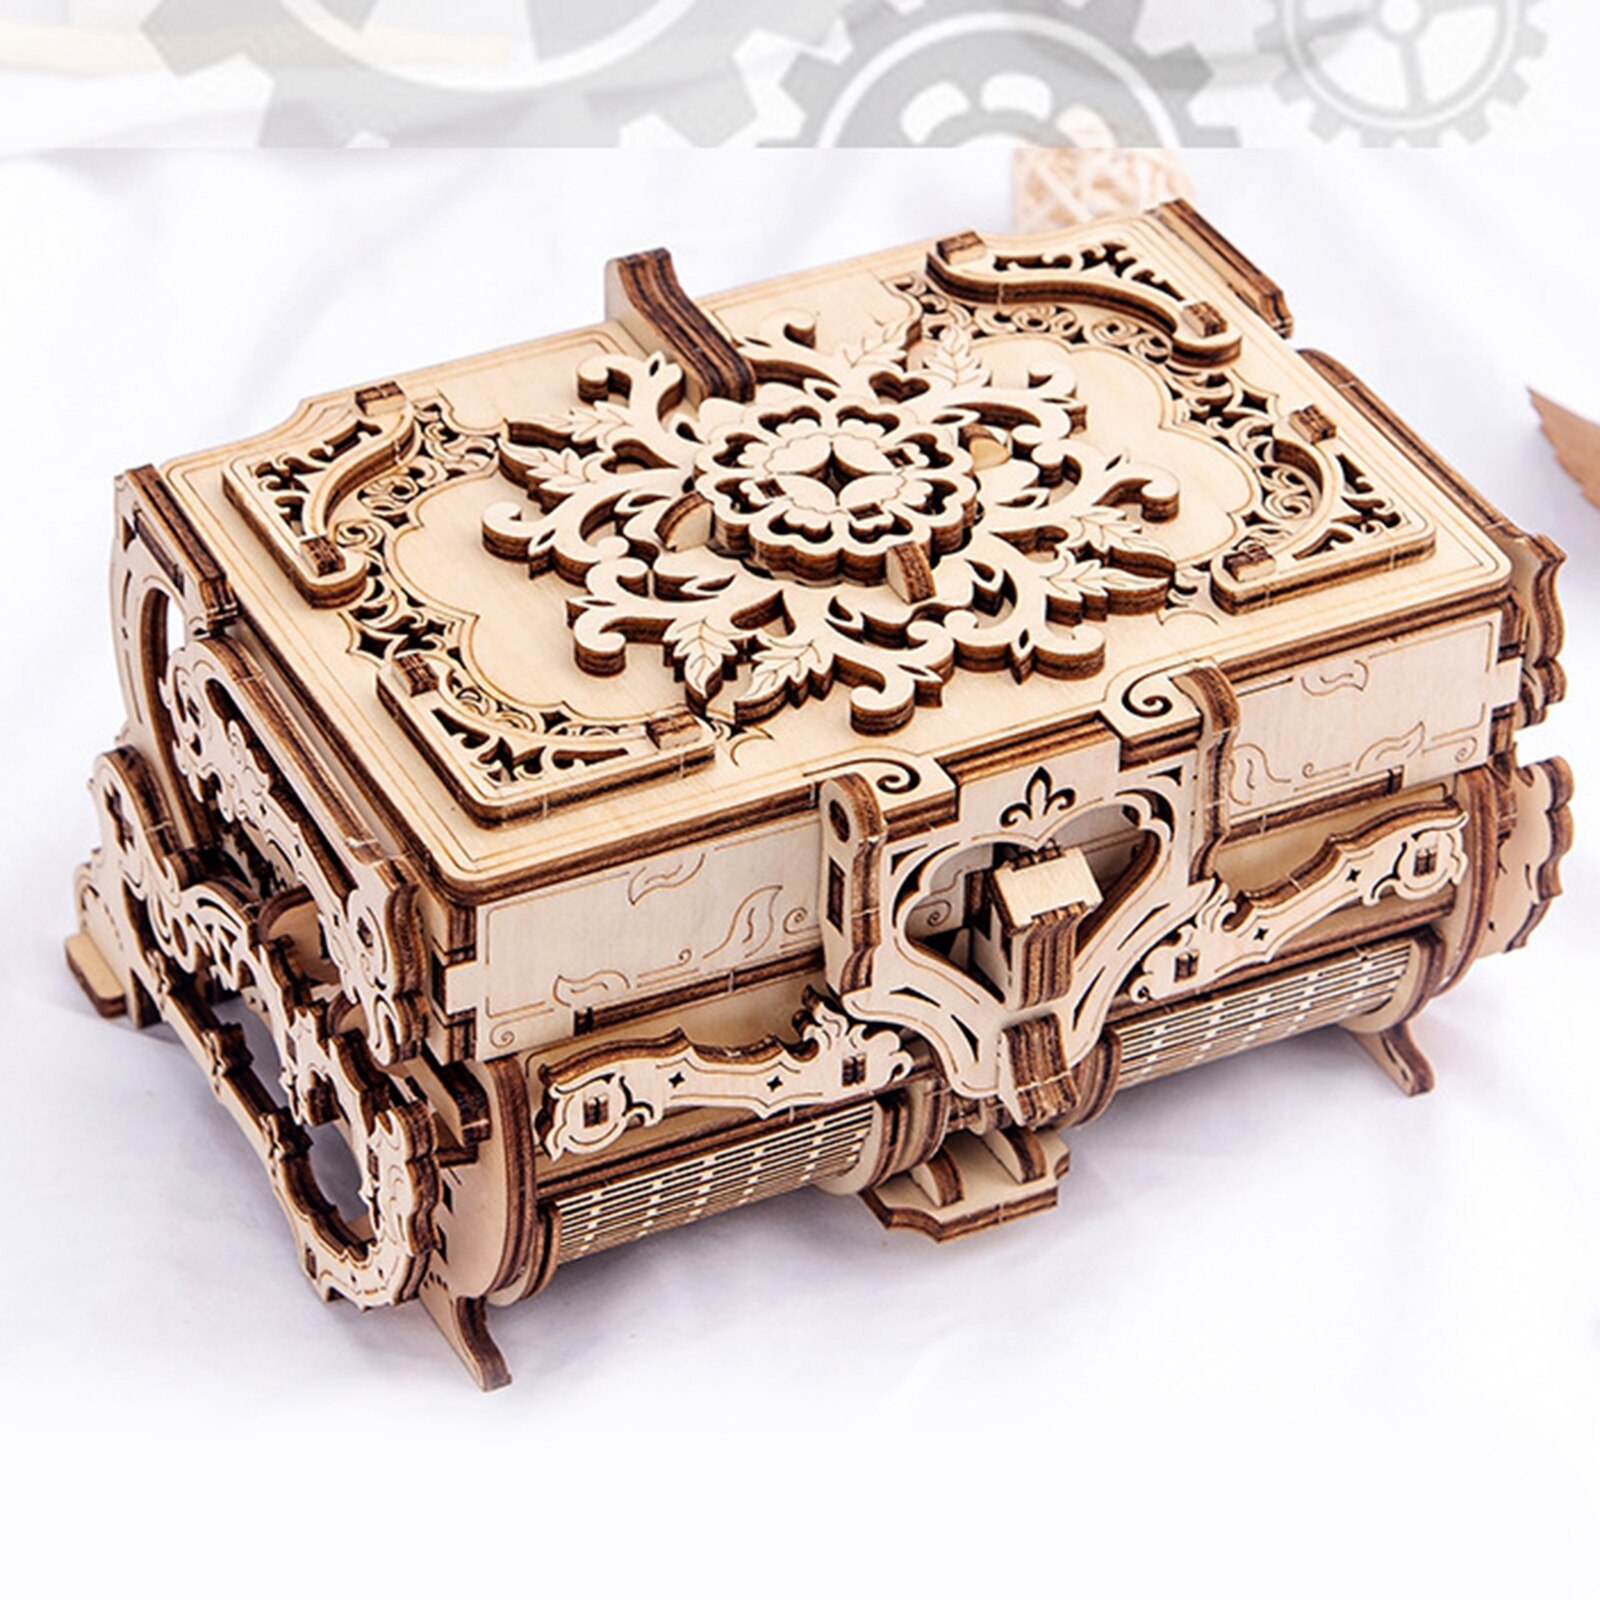 Antieke Doos Houten Puzzel Diy Mechanische 3D Model Building Kit, Mooie Decoratie En Perfect